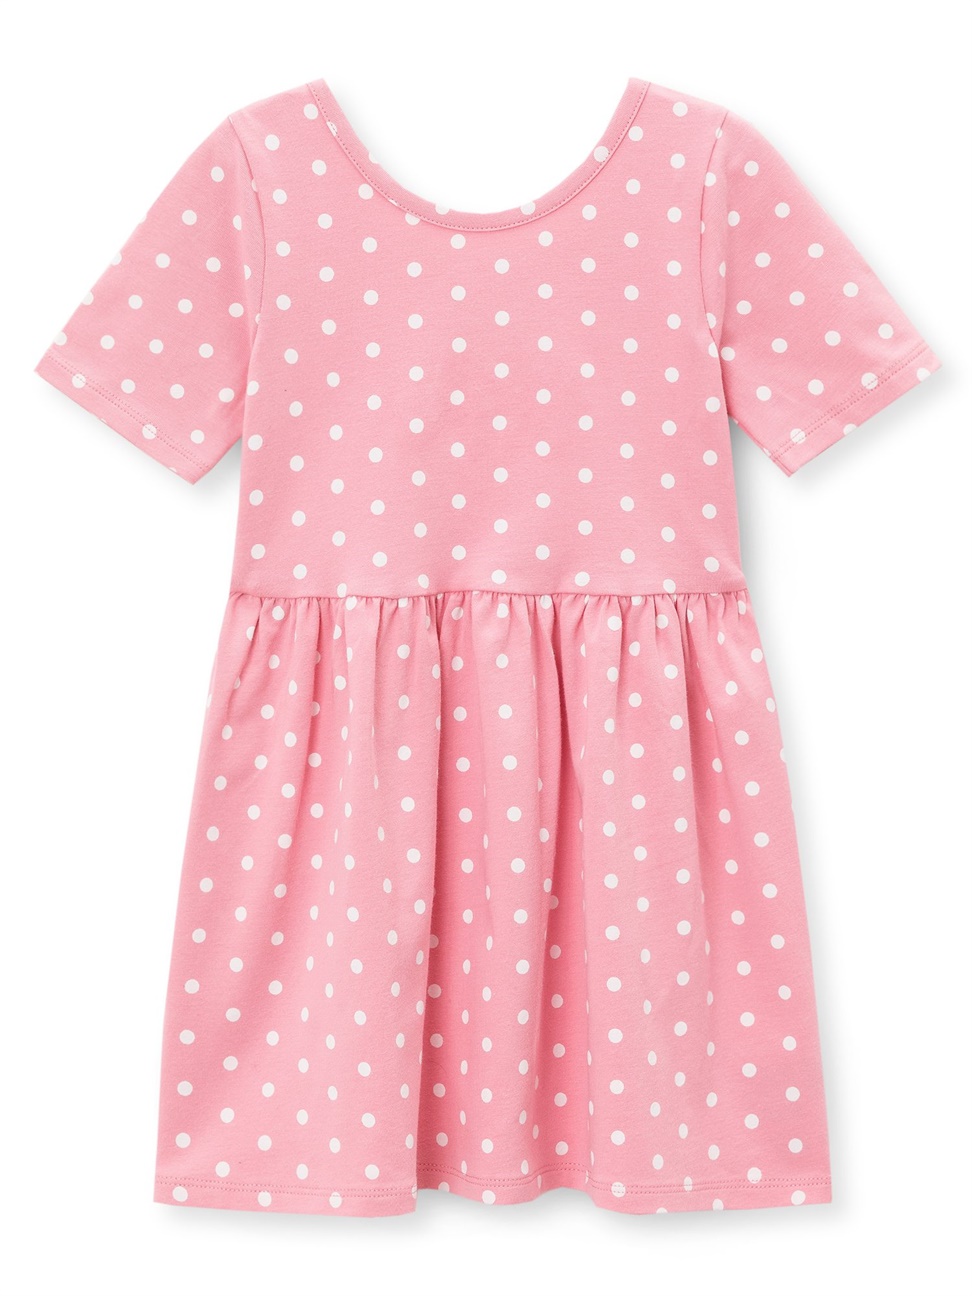 女幼童裝|印花圓領短袖寬擺洋裝-暖粉色白點